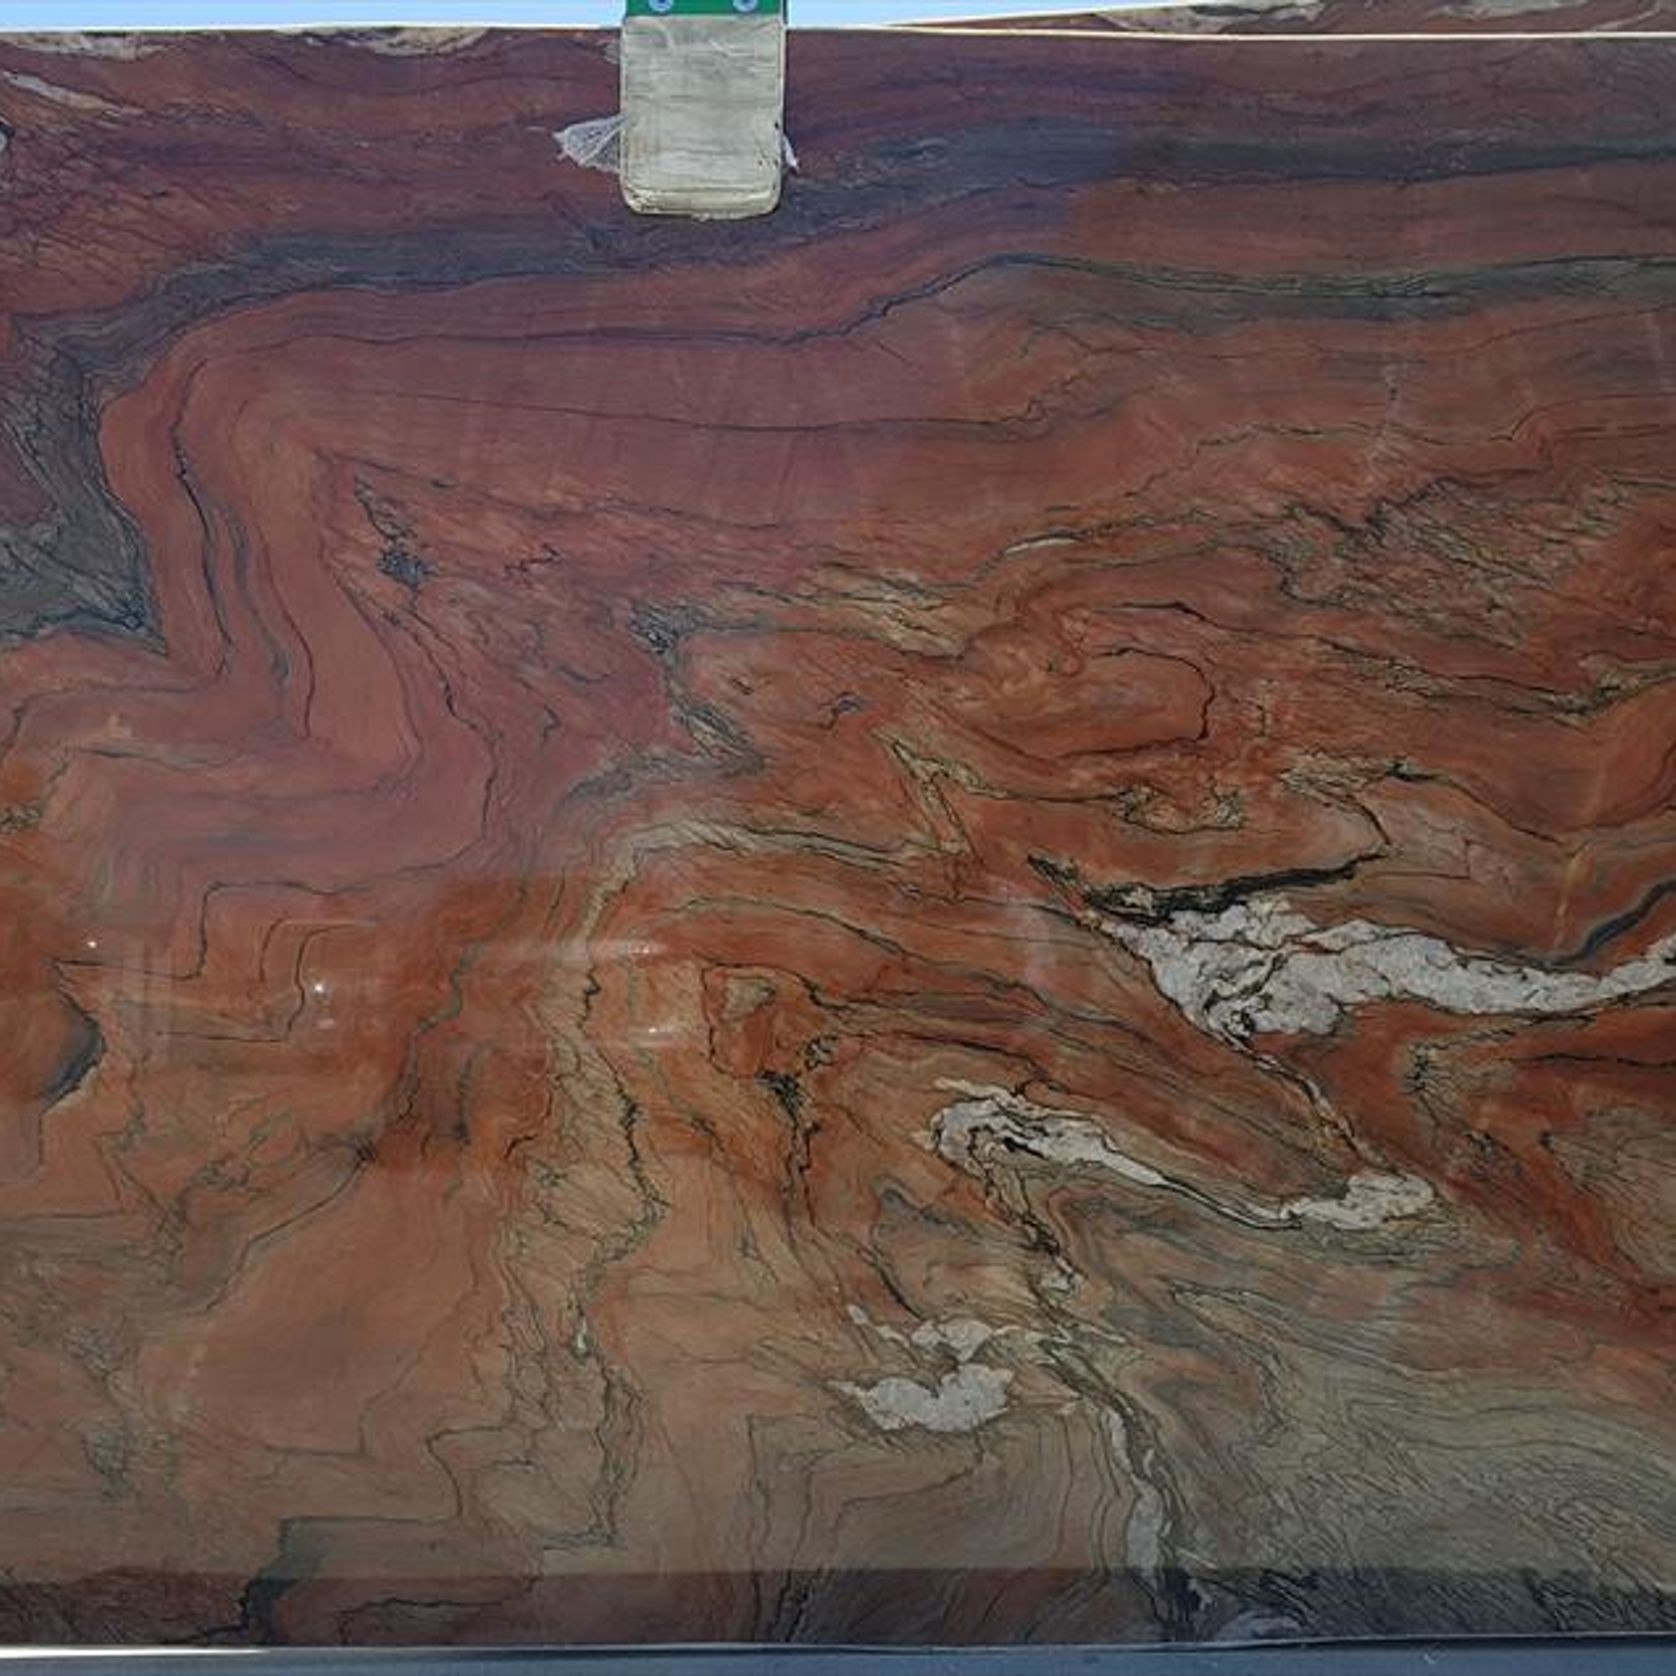 Red Tempest - Natural Quartzite - Platinum gallery detail image